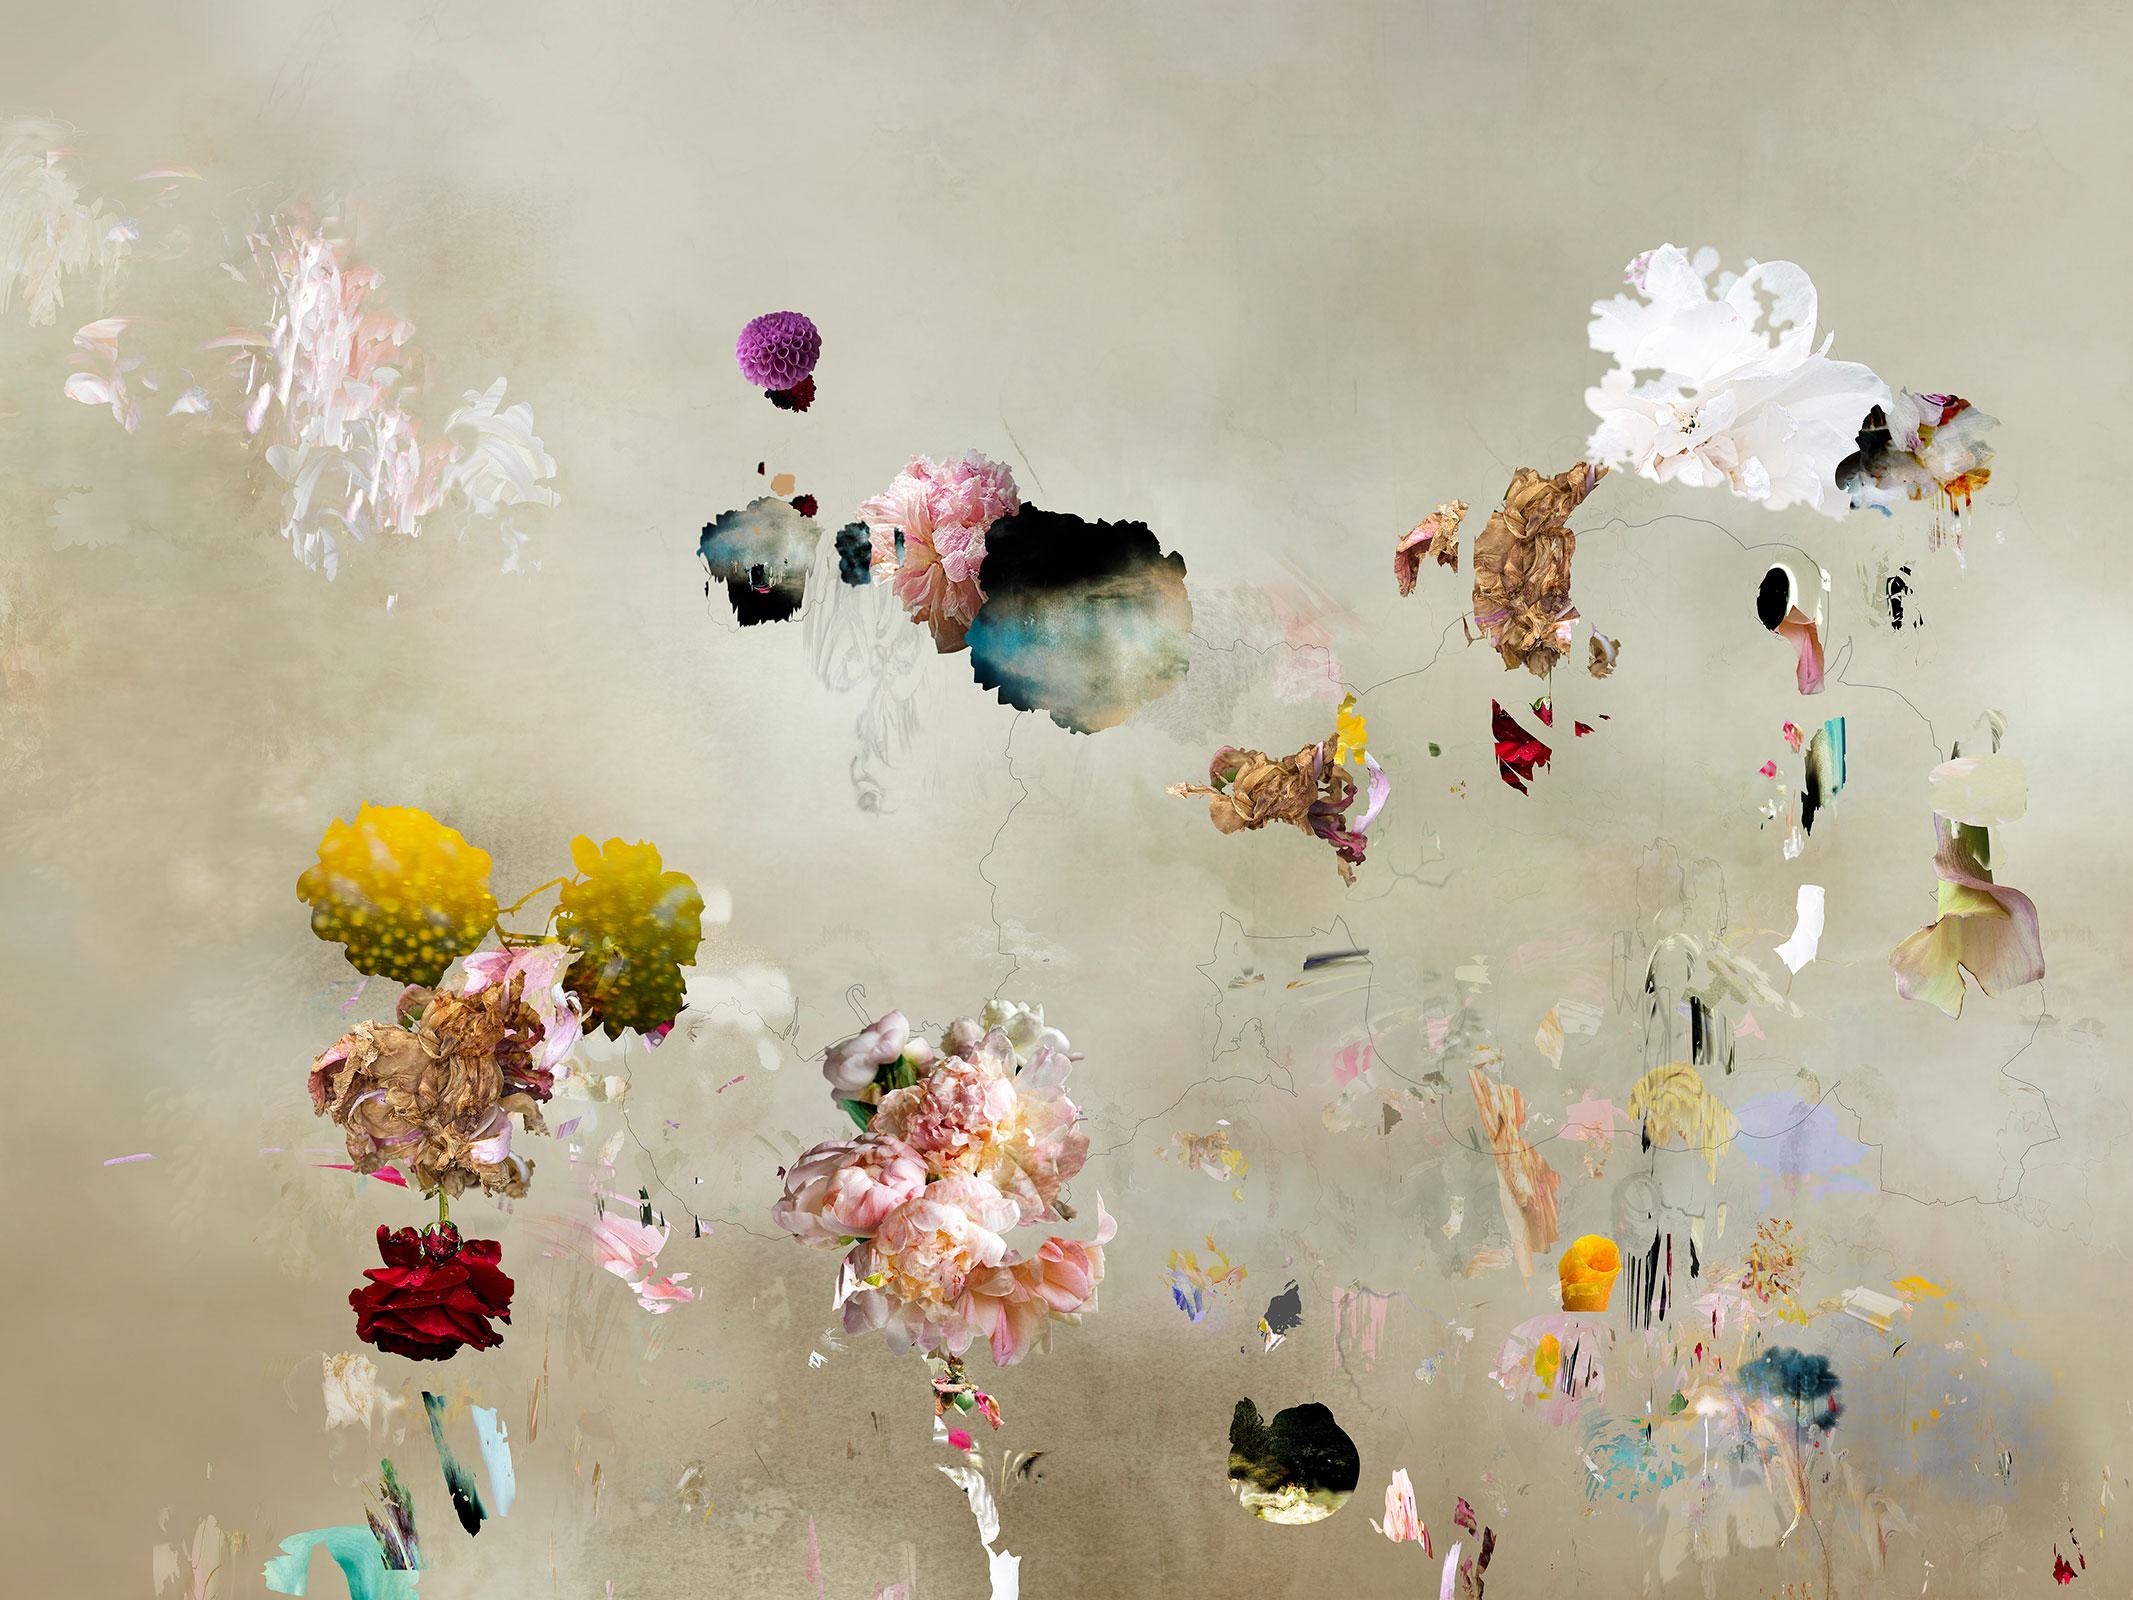 Isabelle Menin Still-Life Photograph – Tentation #8 Zeitgenössische abstrakte Fotografie mit Blumenlandschaft in weichen Pastellfarben